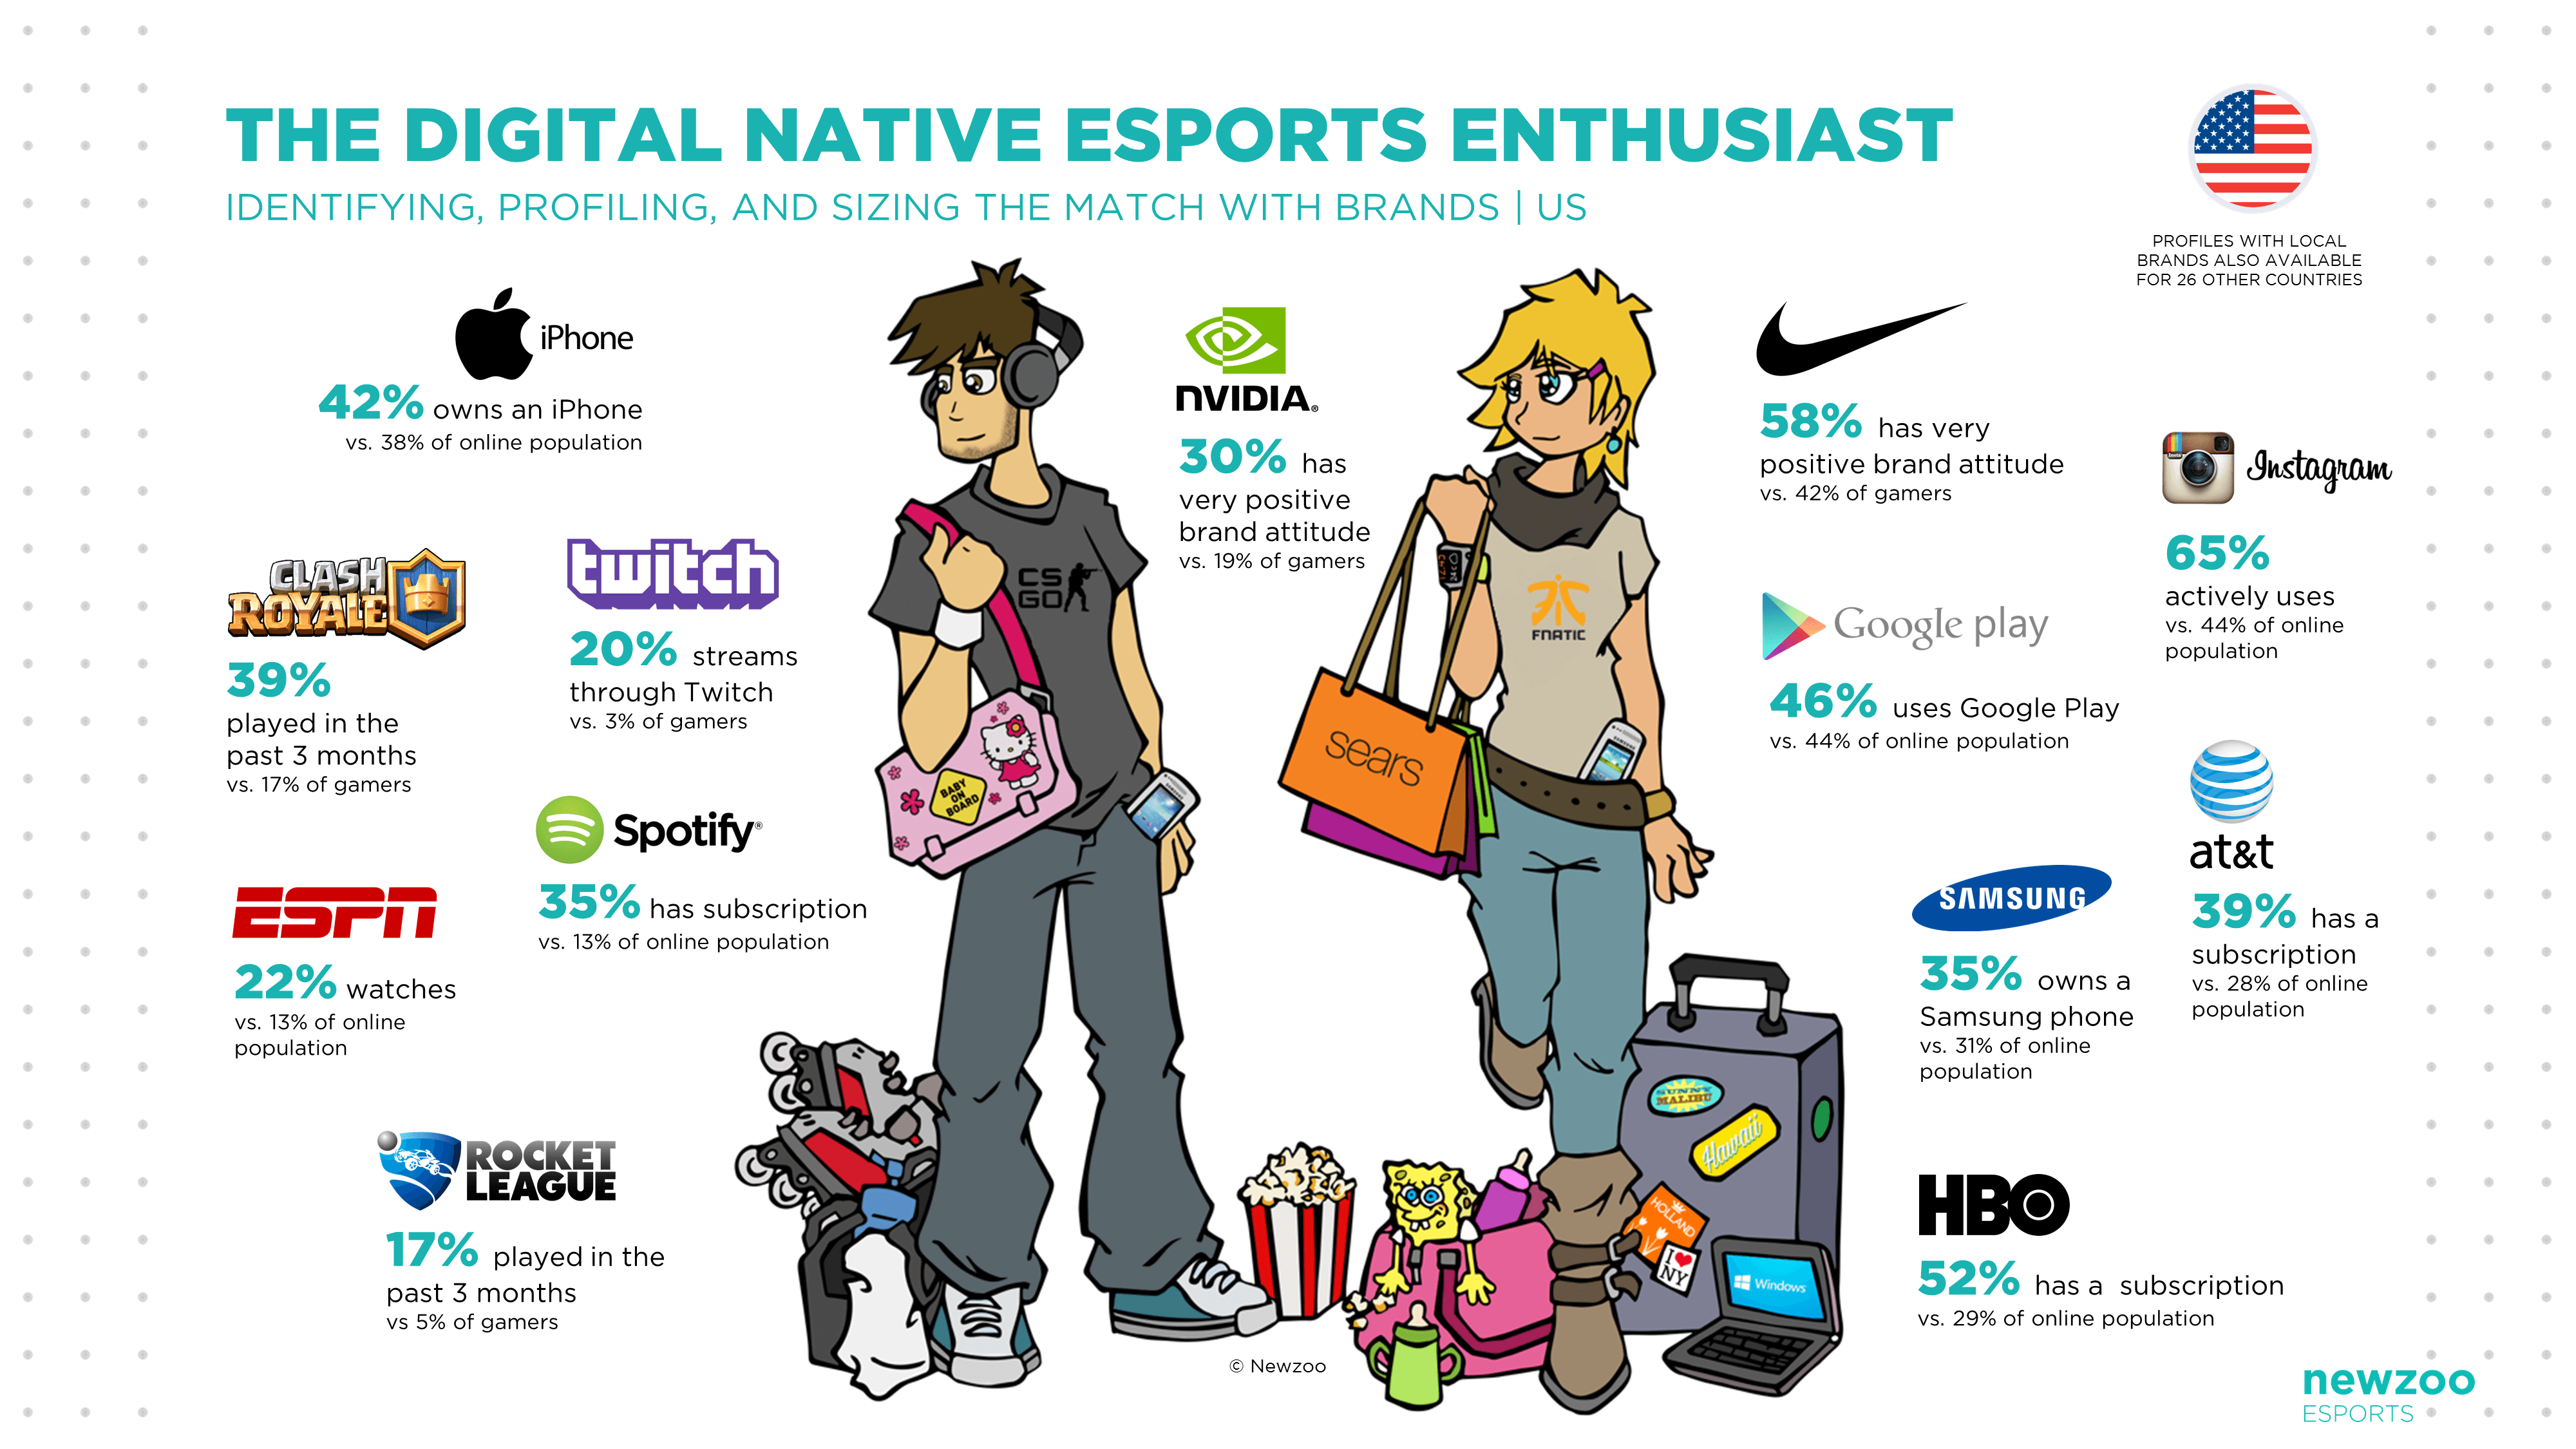 newzoo_the_digital_native_esports_enthusiast-1